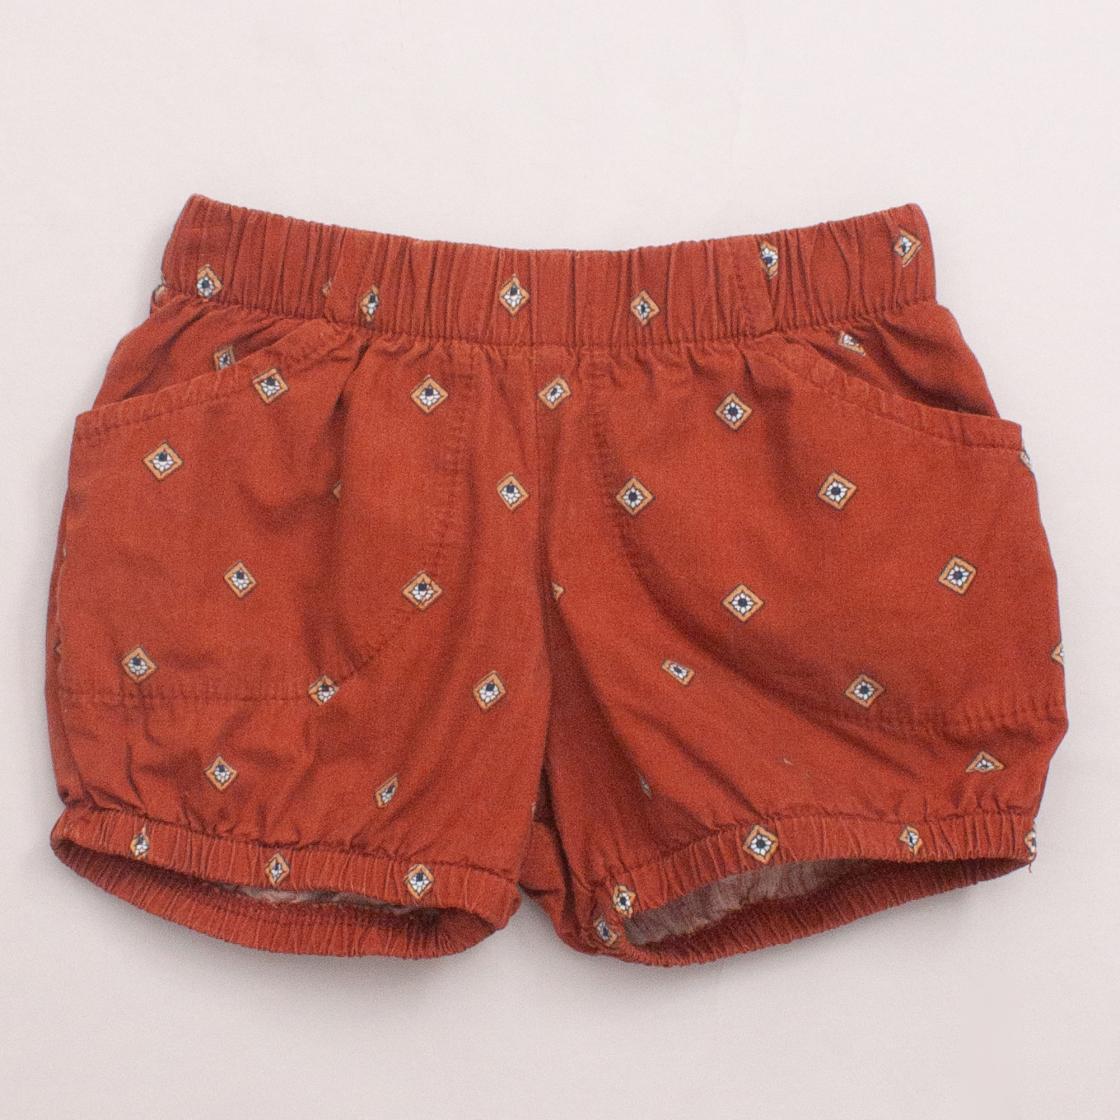 Krutter Patterned Shorts